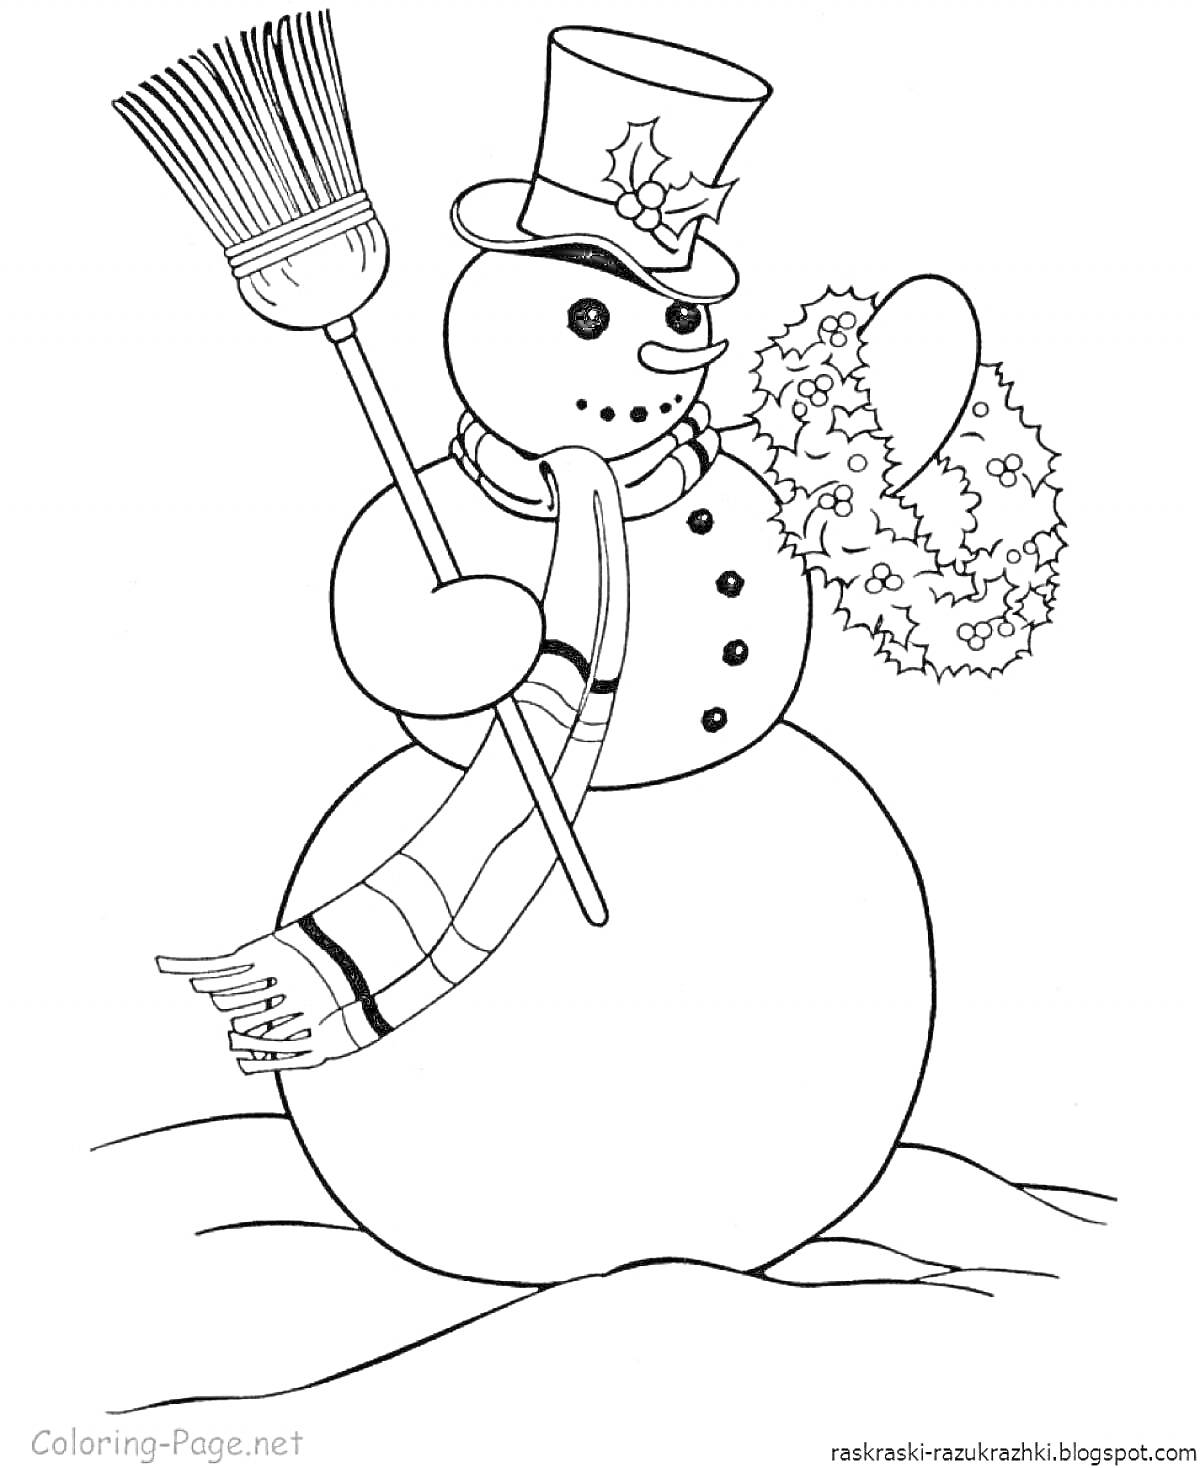 Снеговик с метлой, шарфом, шляпой и рождественским венком на снежной поляне